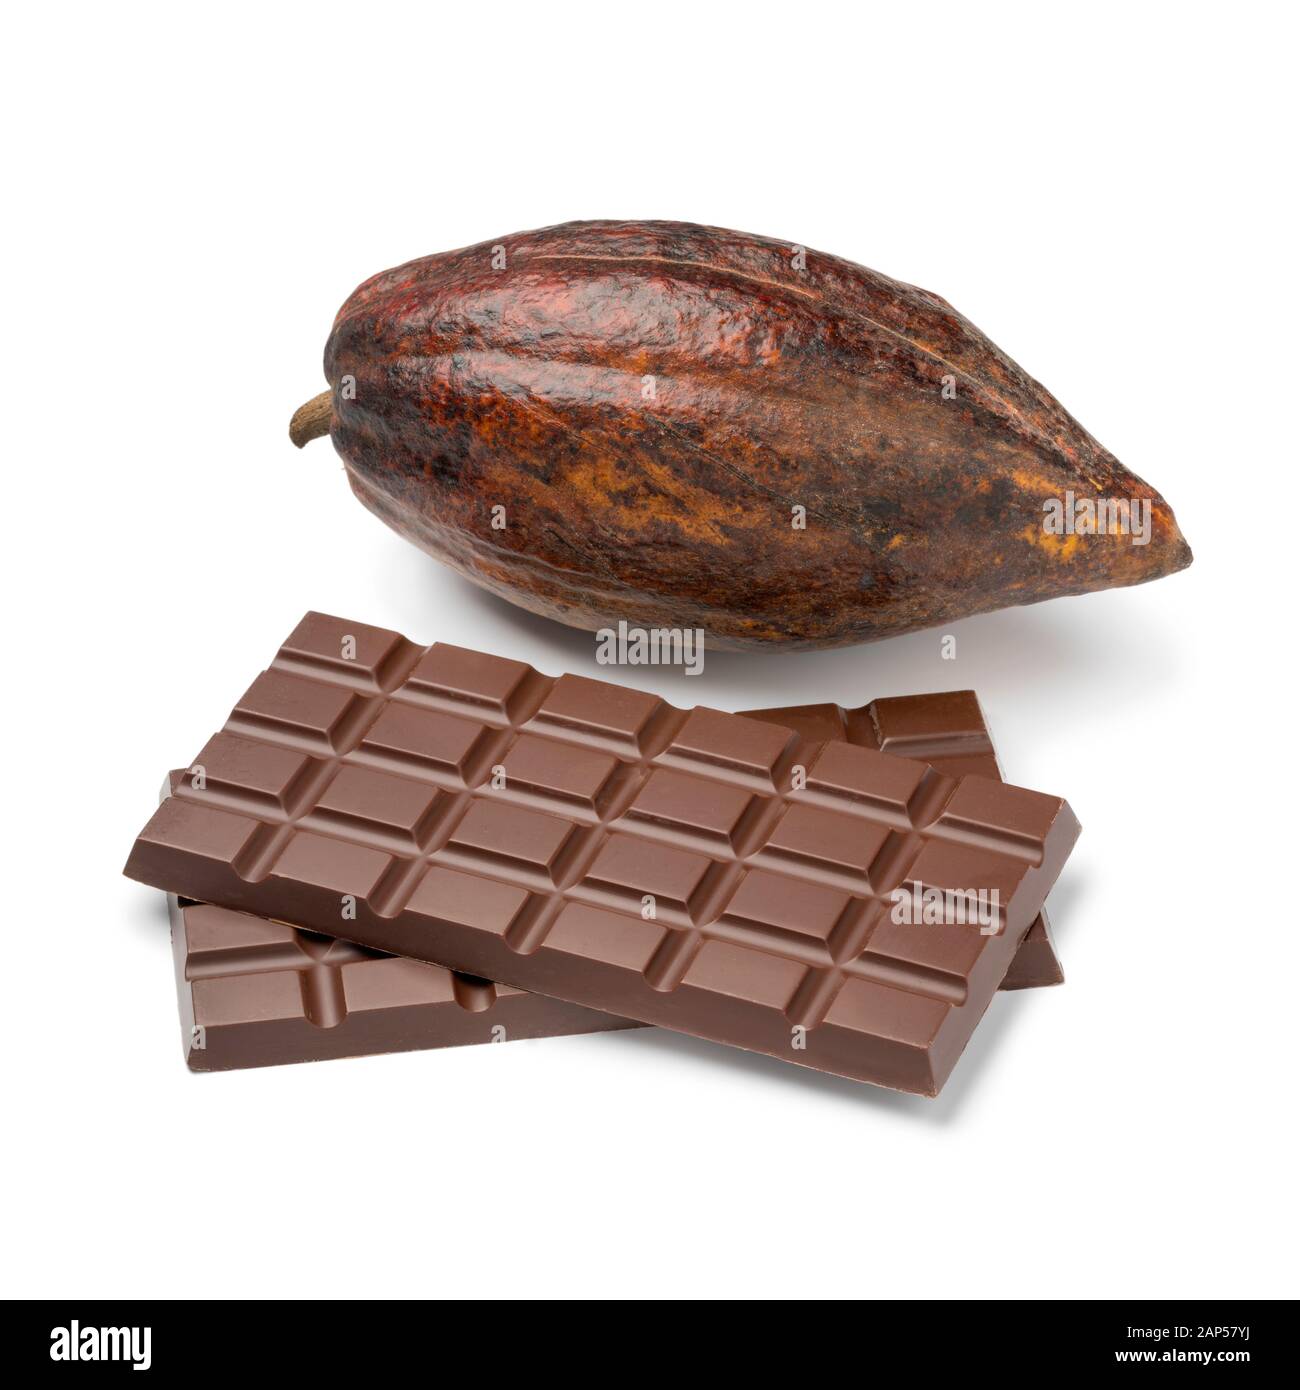 Fruits de cacao entiers crus et barres de chocolat isolés sur fond blanc Banque D'Images